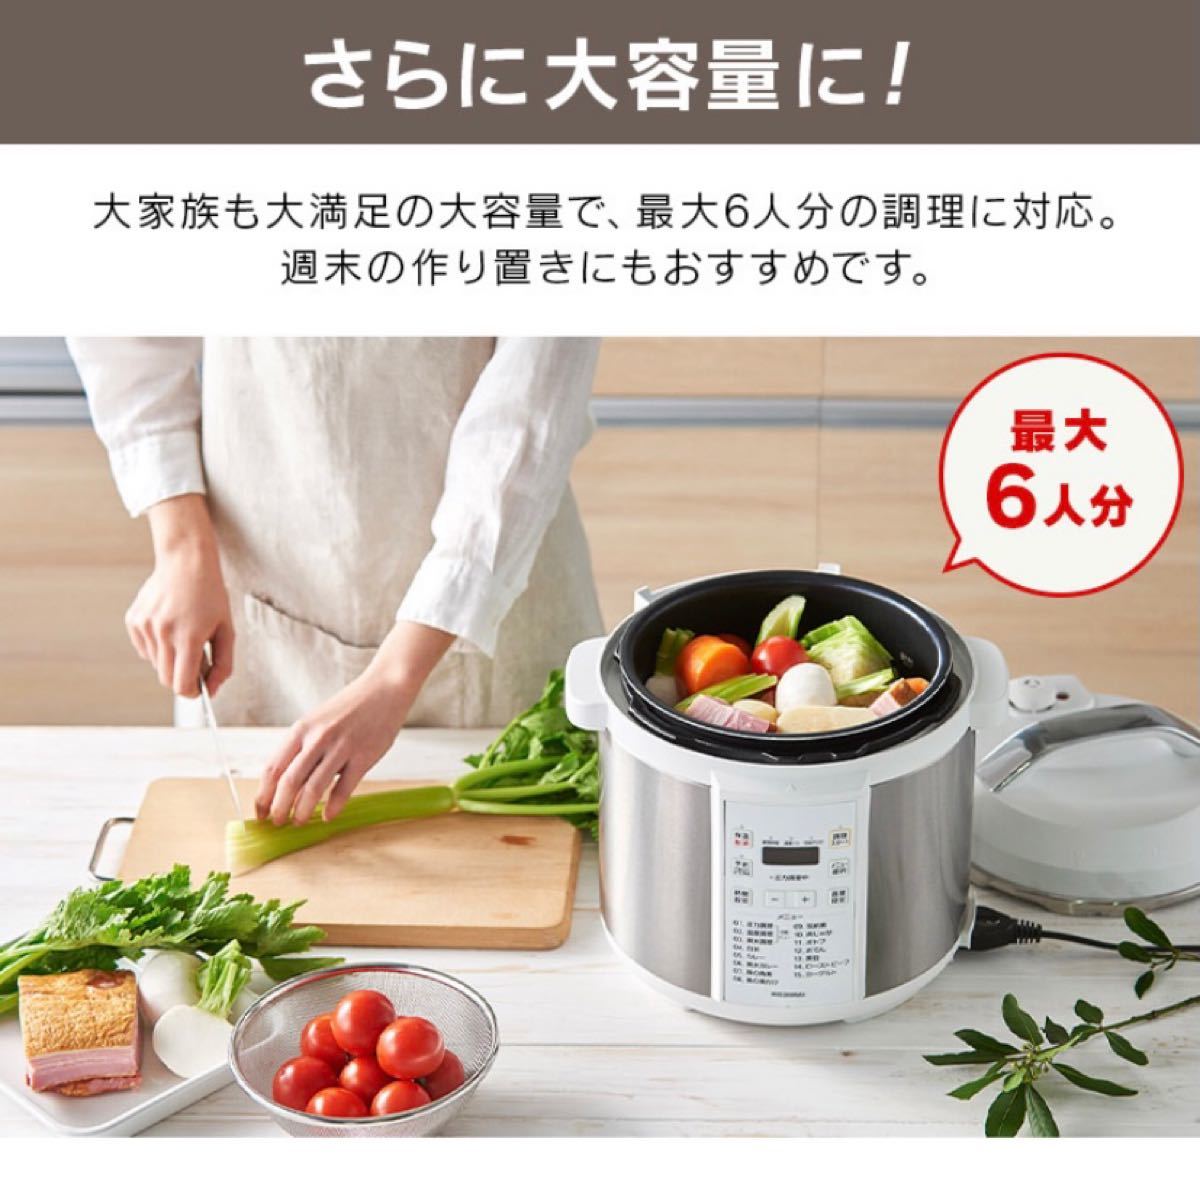 【新品未開封】アイリスオーヤマ 電気圧力鍋 6L PC-EMA6-W